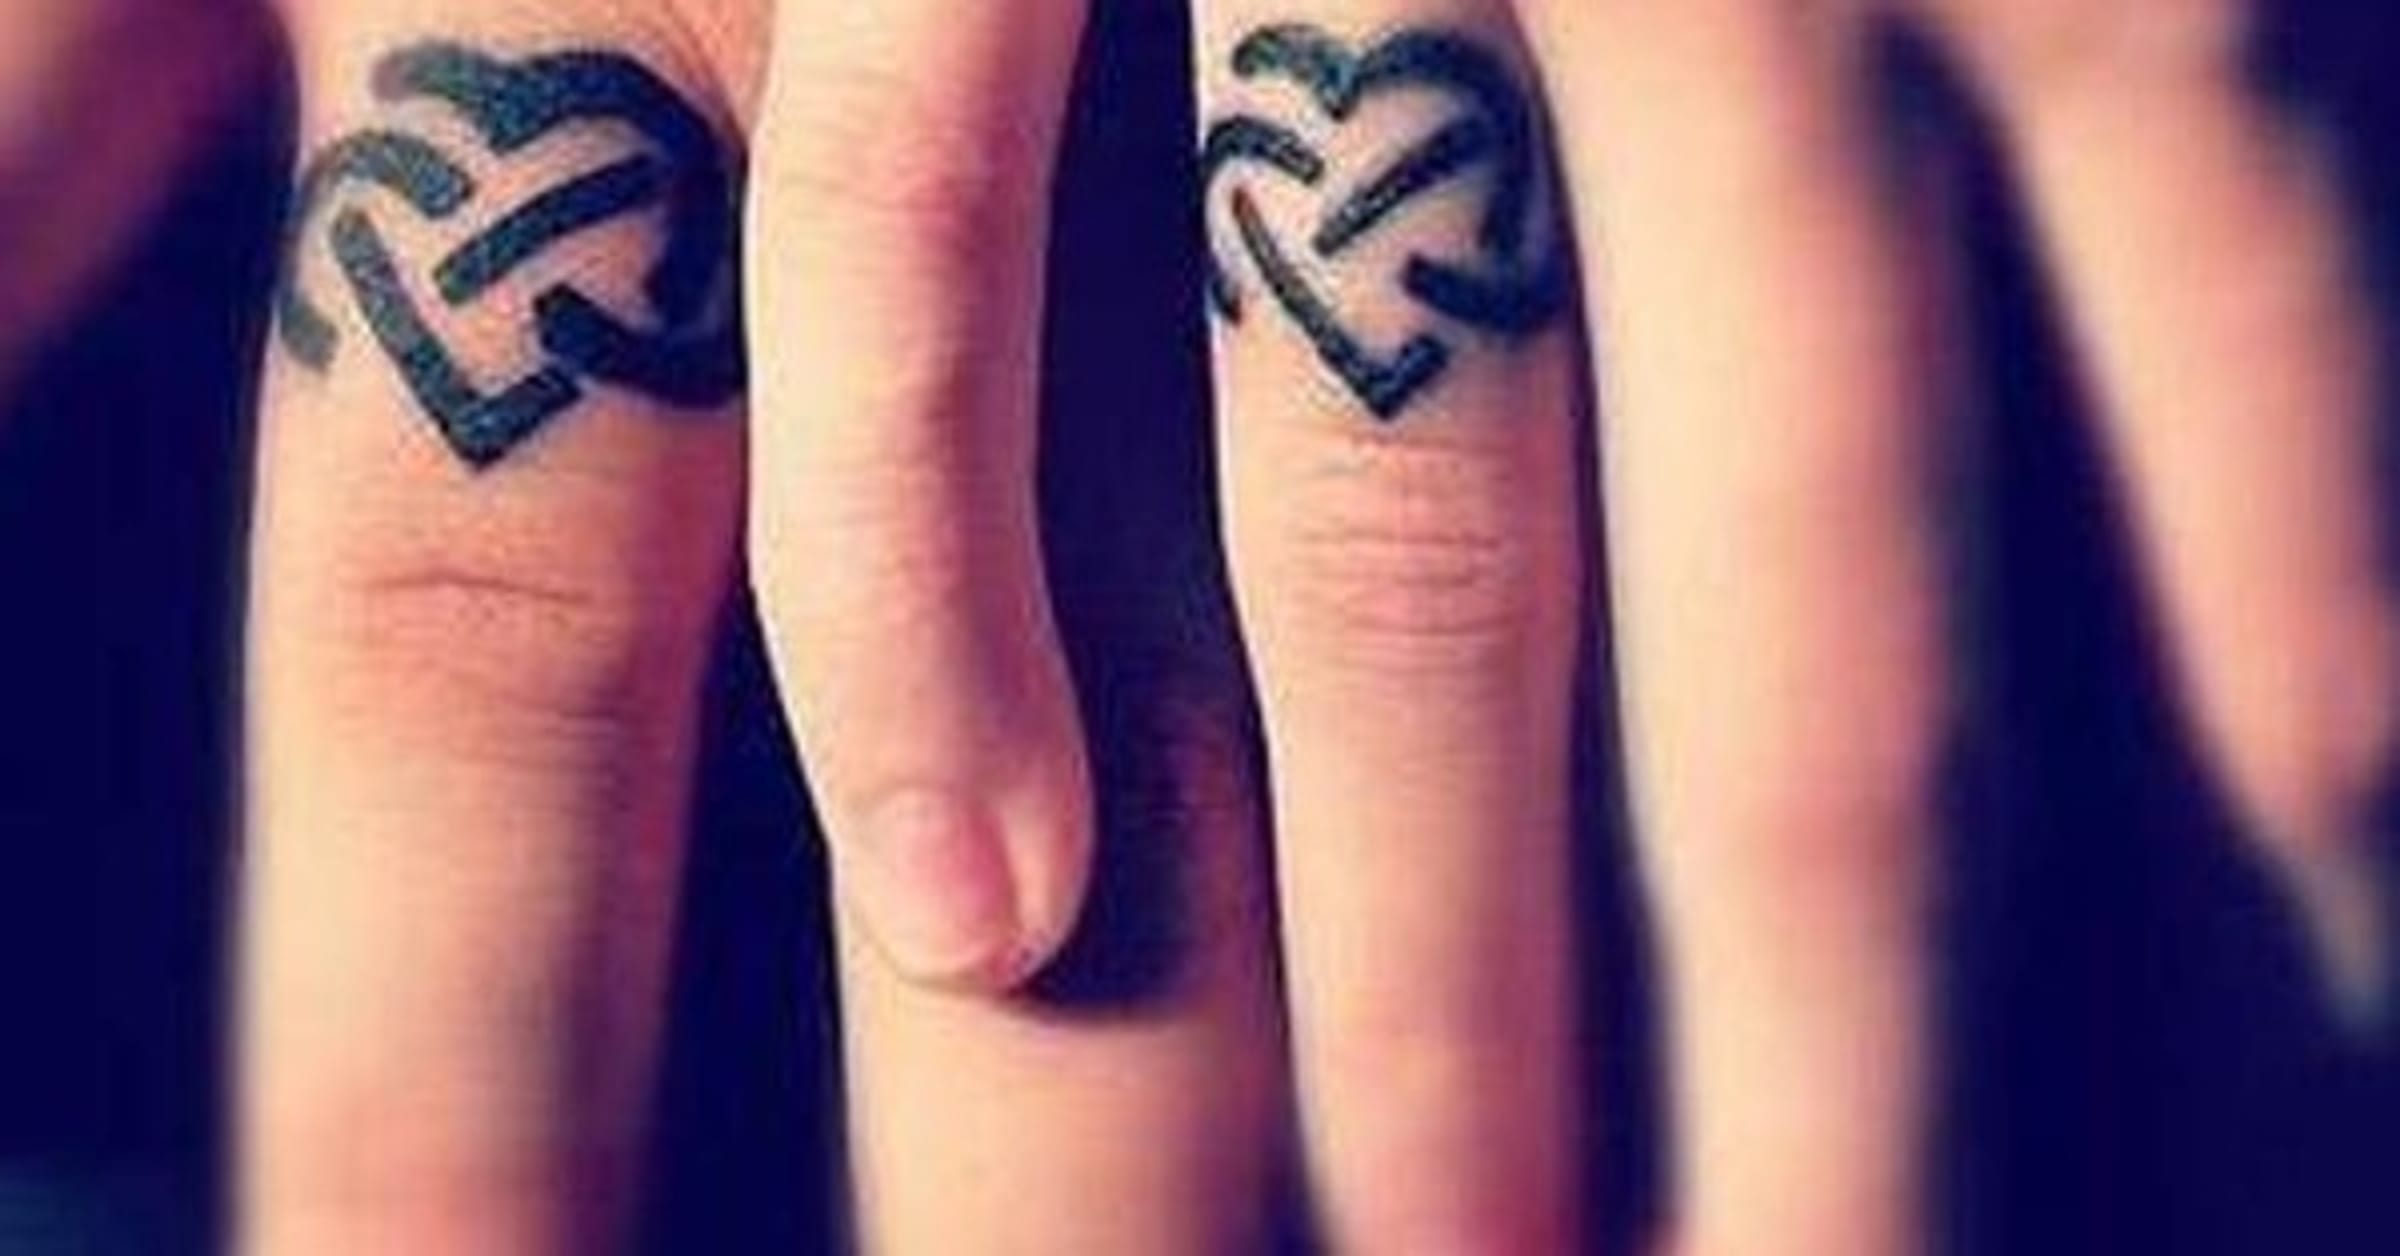 ring finger tattoos designs